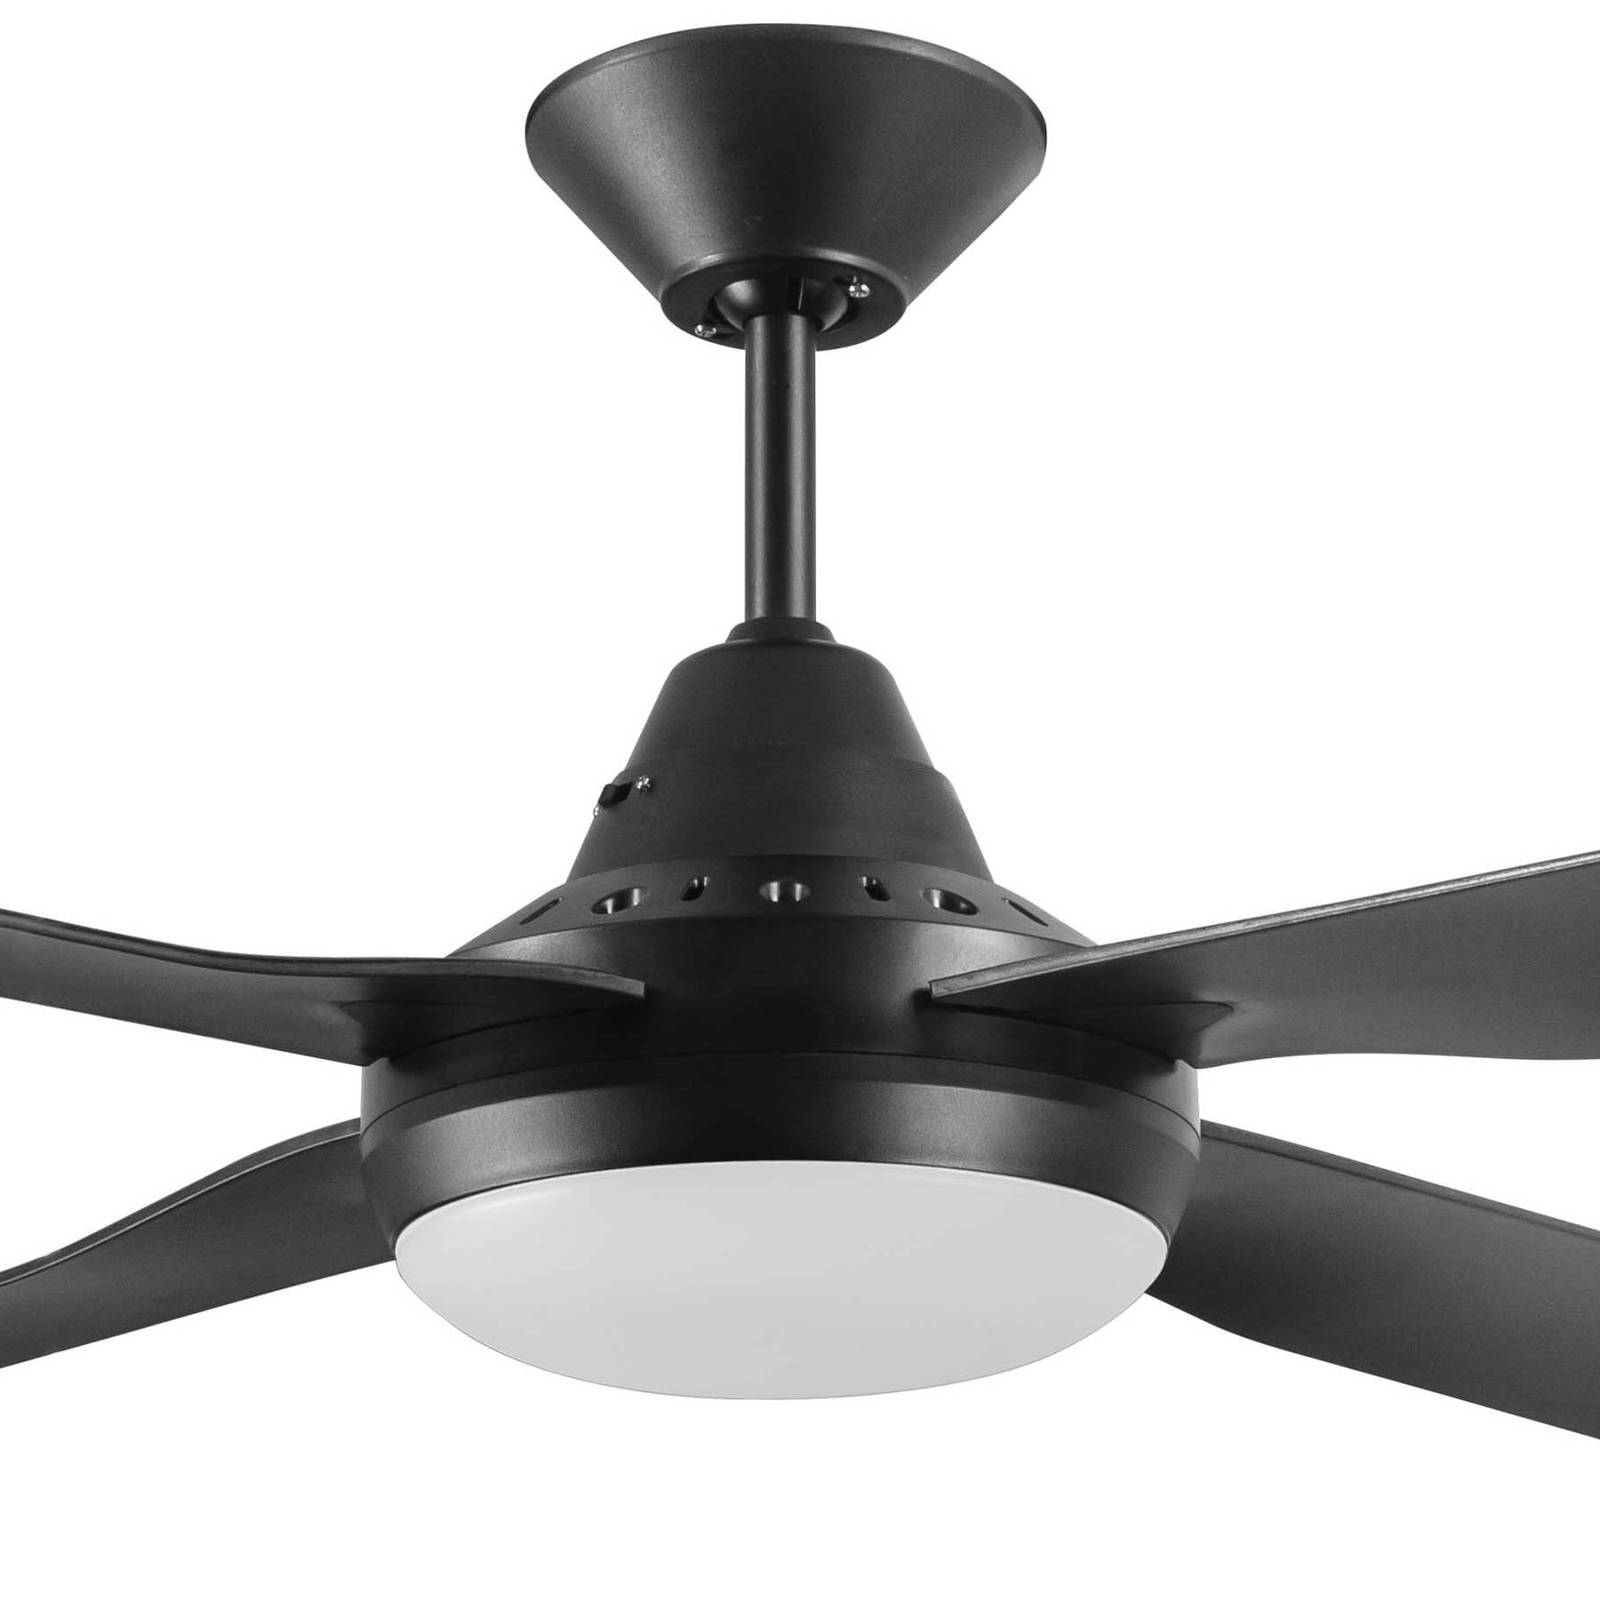 Image of Beacon Lighting Ventilateur de plafond LED Moonah, noir 9333509180883